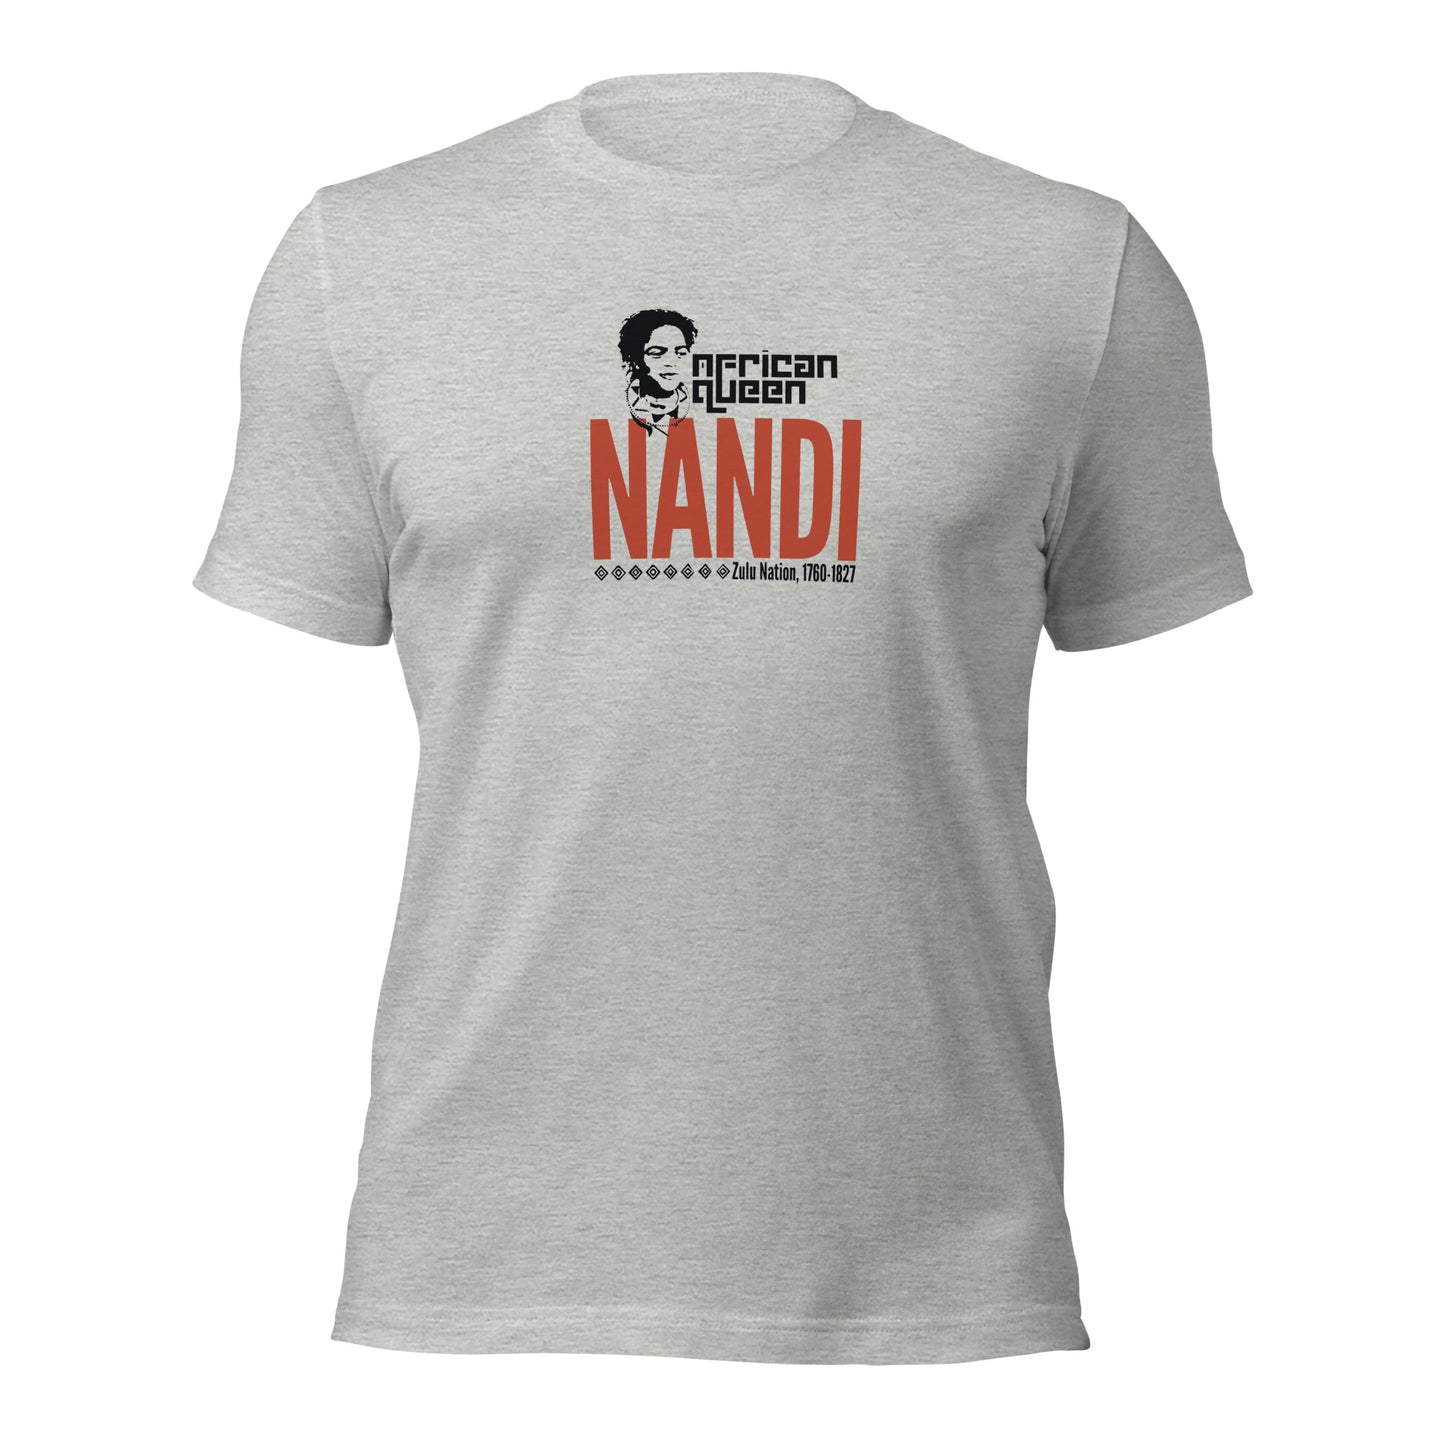 Queen Nandi Adult Unisex t-shirt